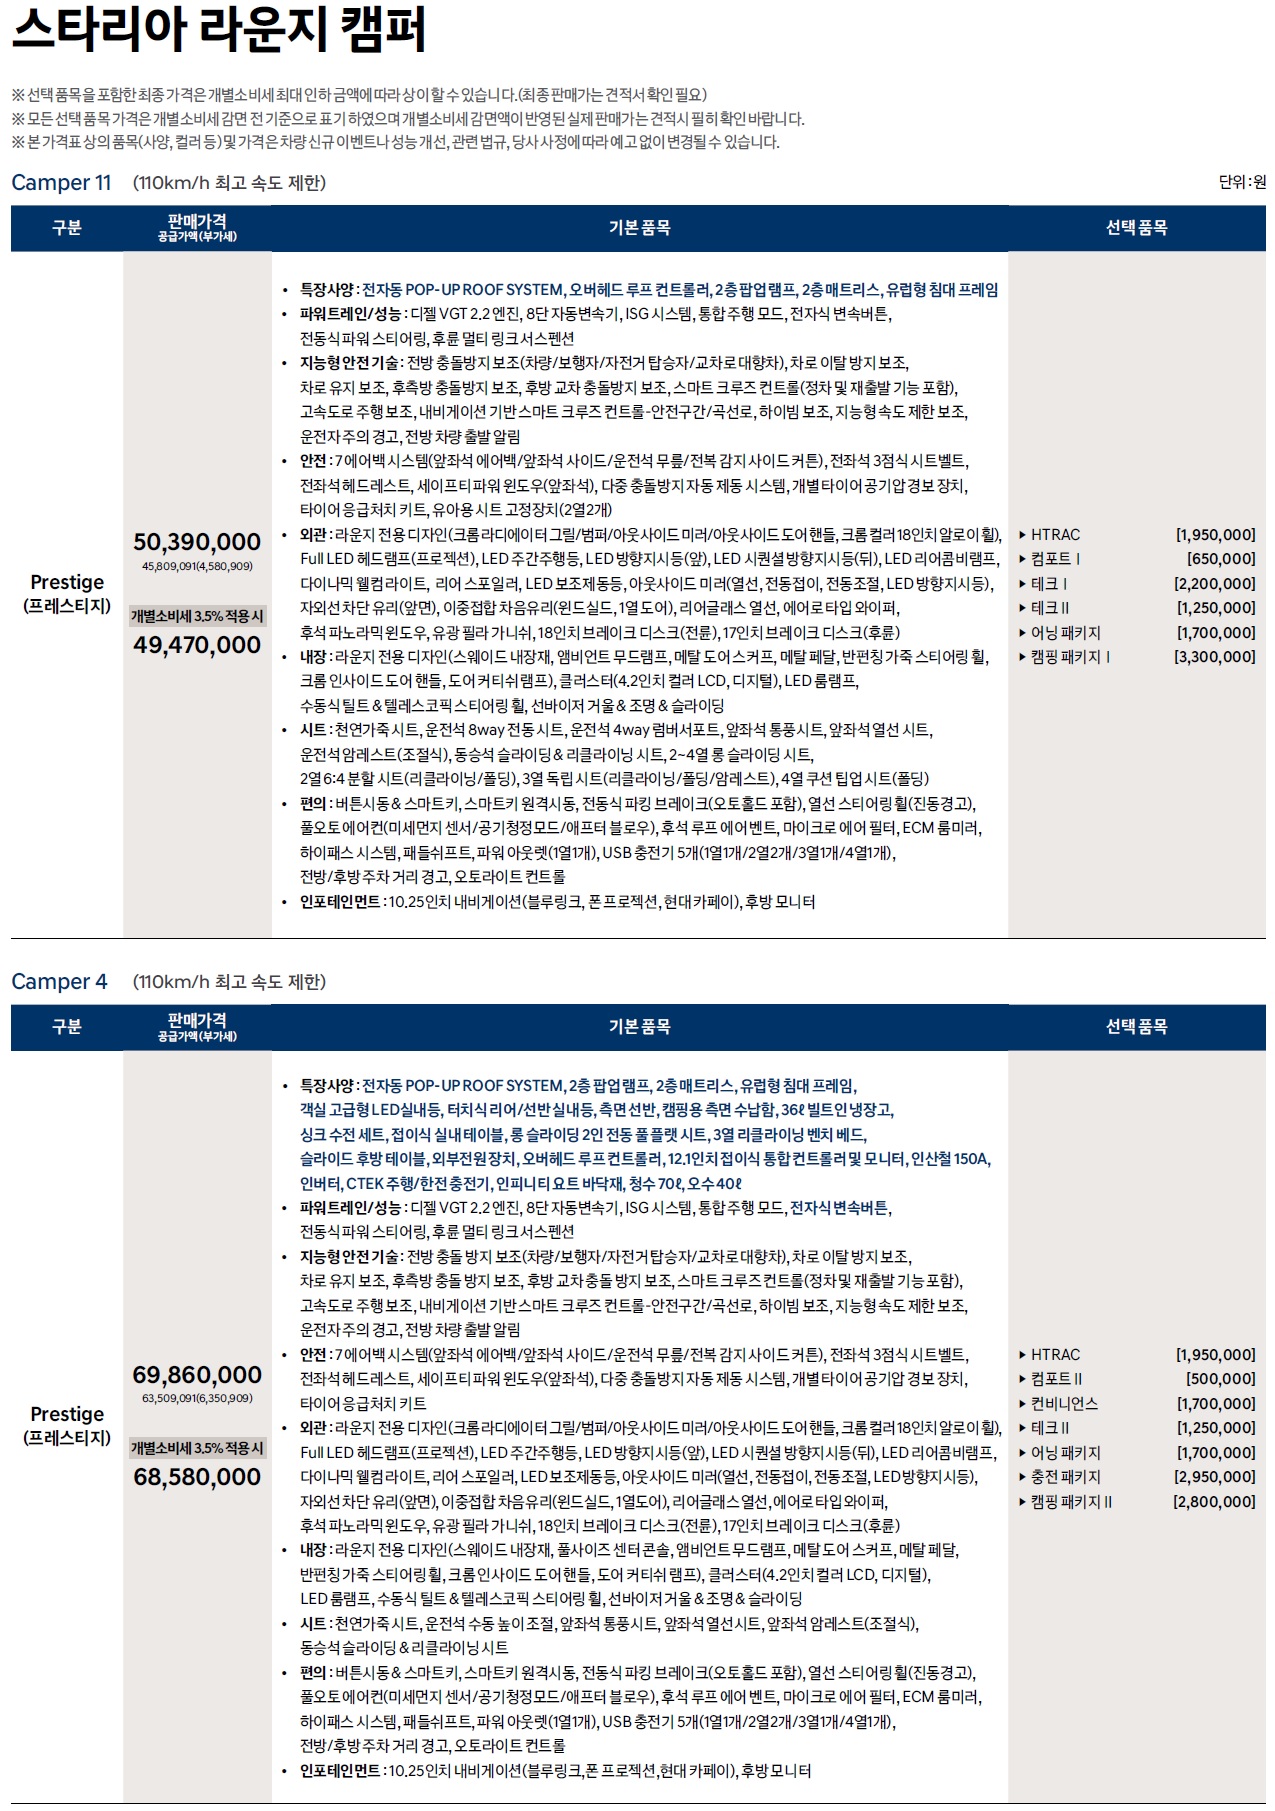 스타리아 라운지 캠퍼 가격표 - 2022년 08월 -1.jpg